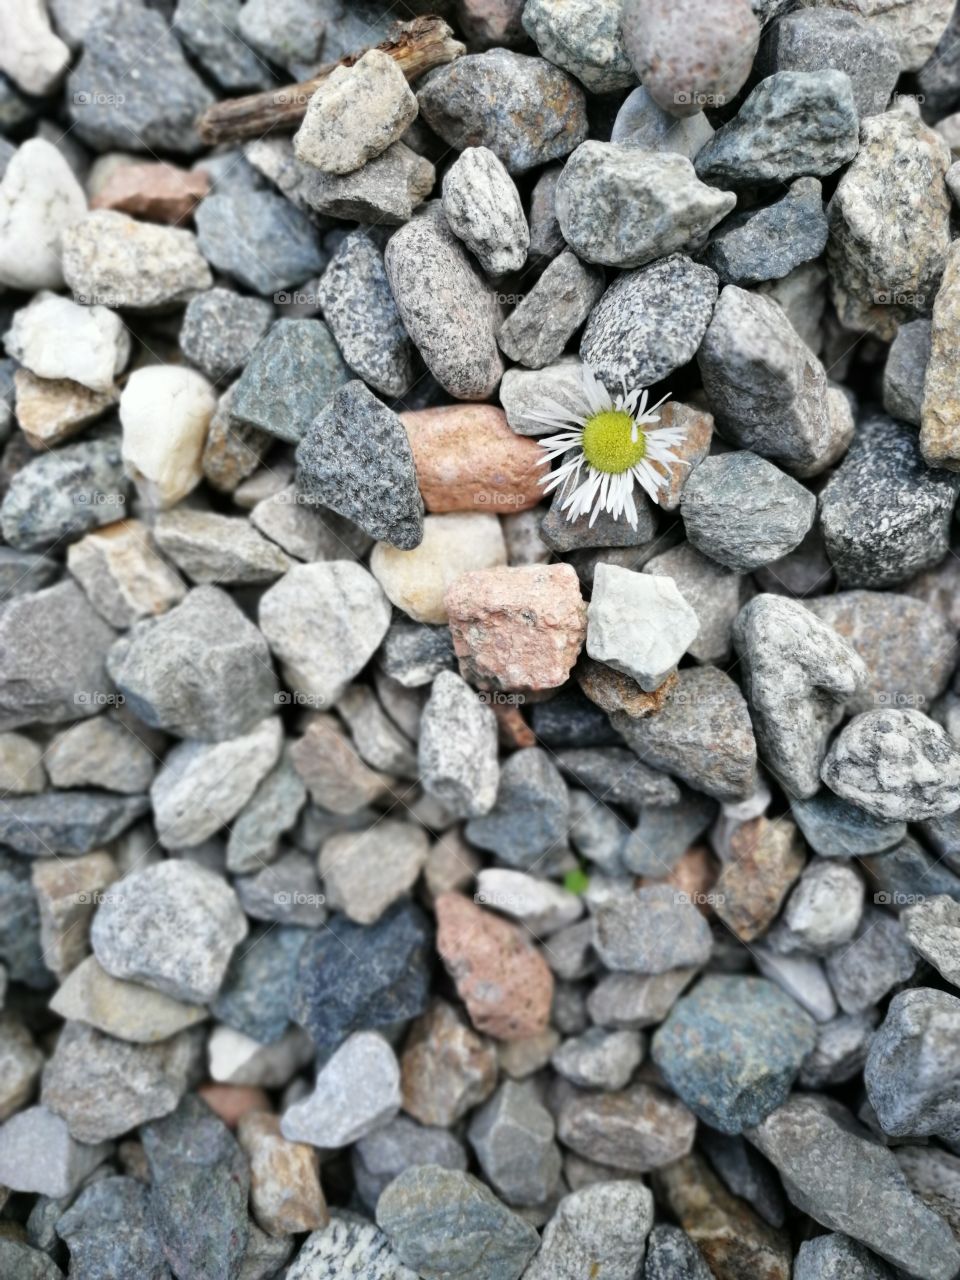 Daisy on lake stones. Flay lay